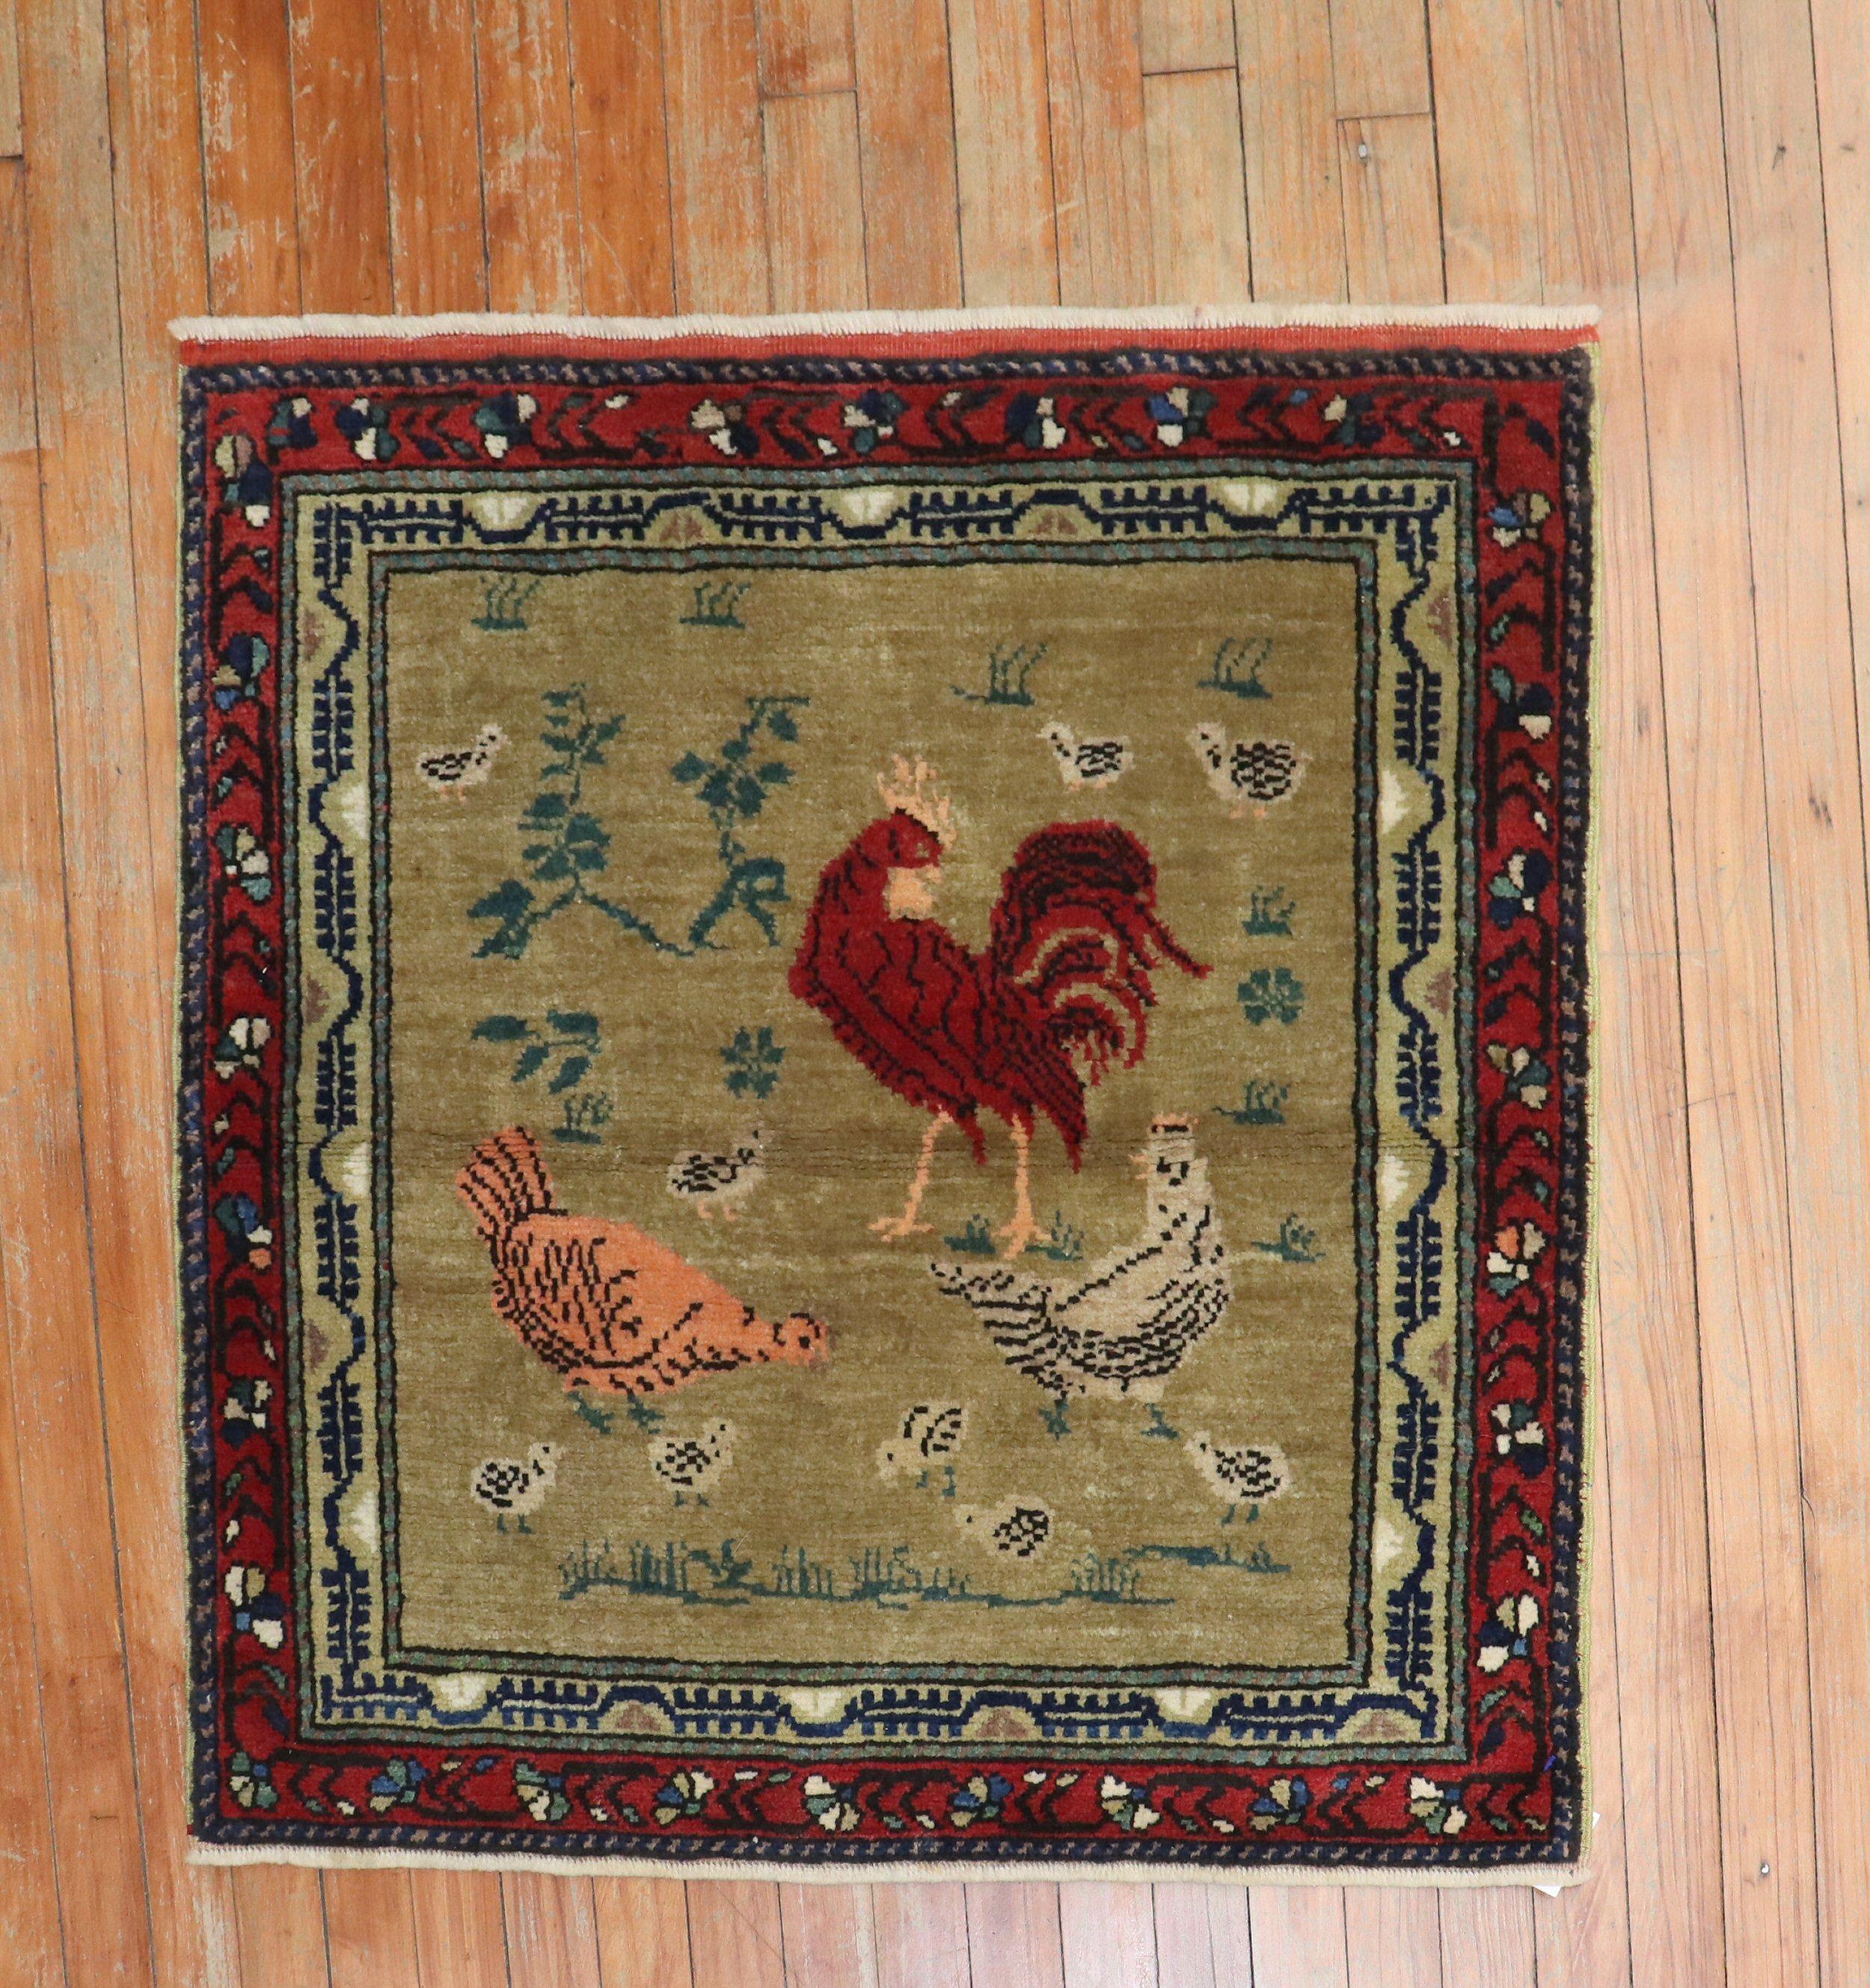 türkischer teppich aus der mitte des 20. jahrhunderts, der ein huhn und einen hahn auf einem braunen feld darstellt

Maße: 2'10